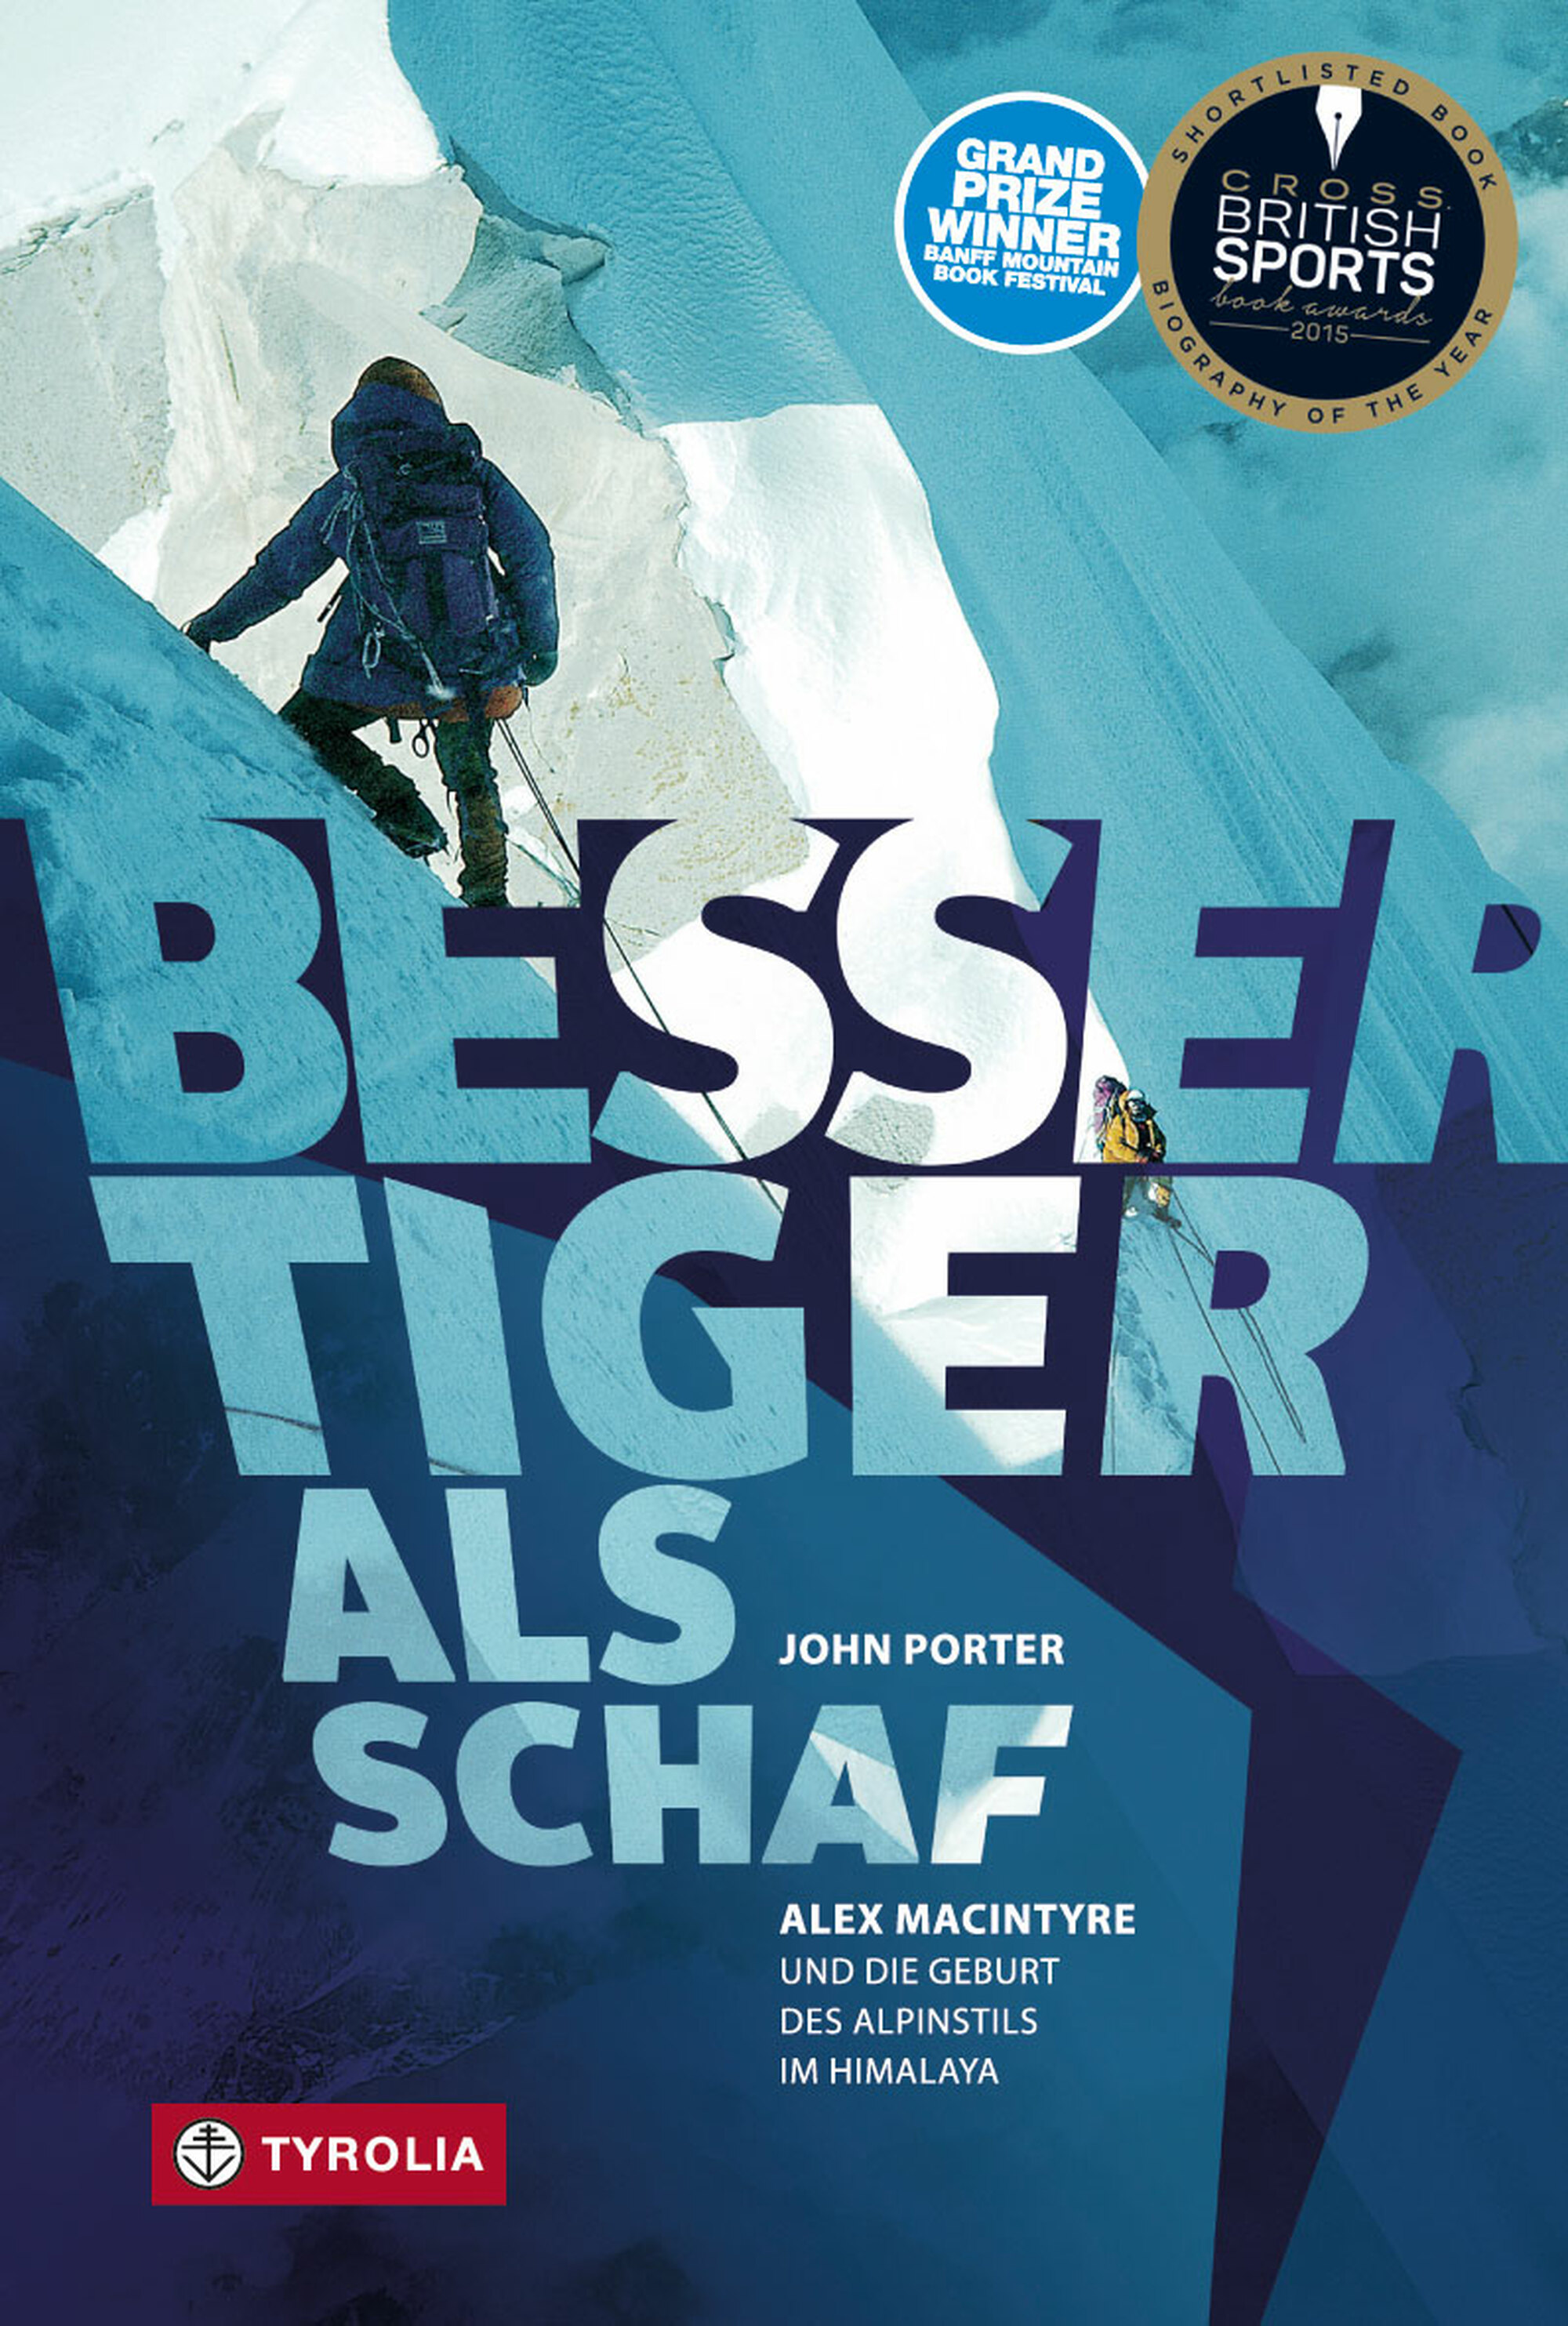 «Besser Tiger als Schaf. Alex MacIntyre und die Geburt des Alpinstils im Himalaya»